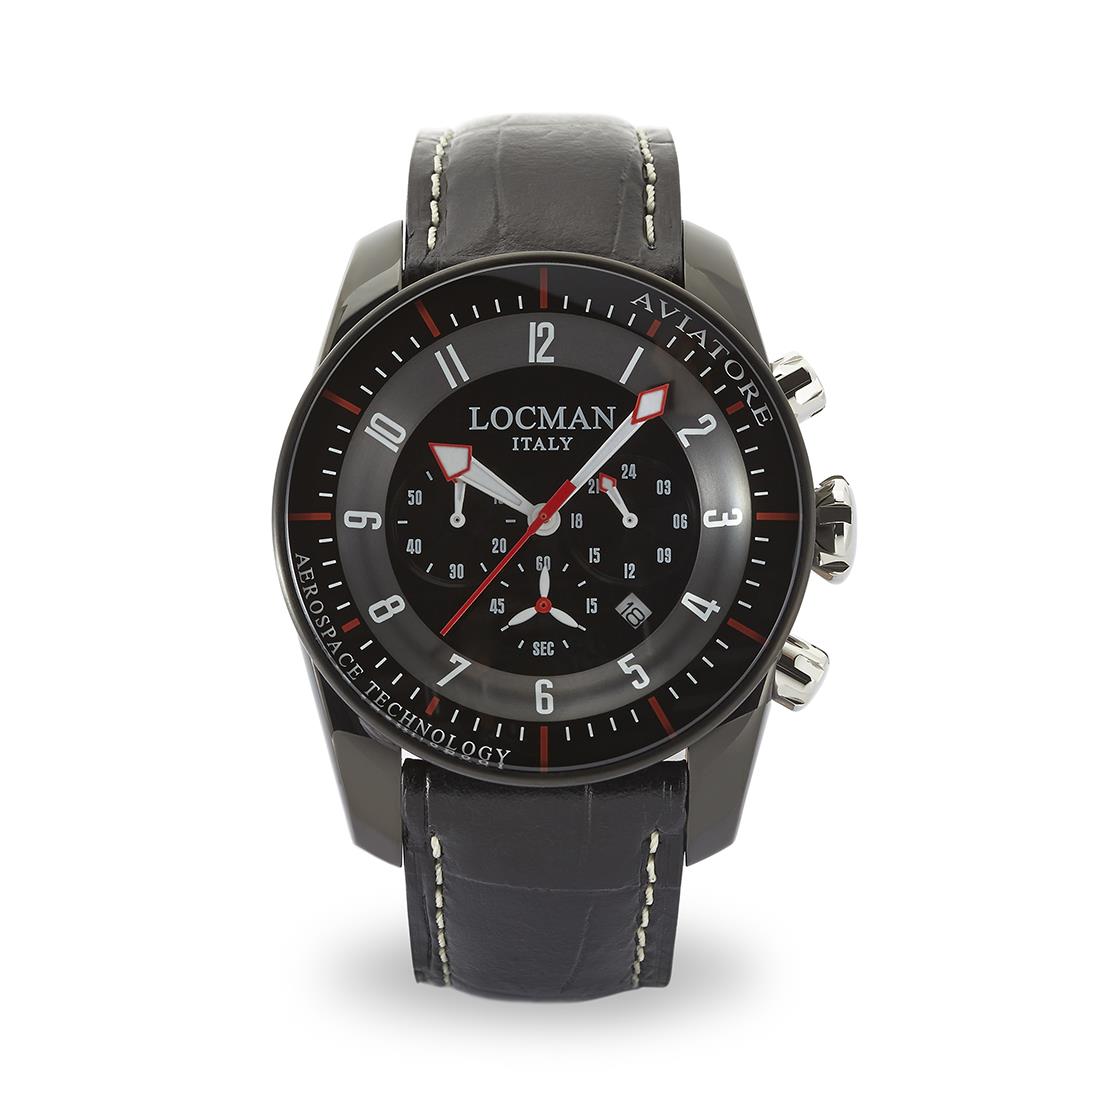 Man's watch with 44 mm case - LOCMAN